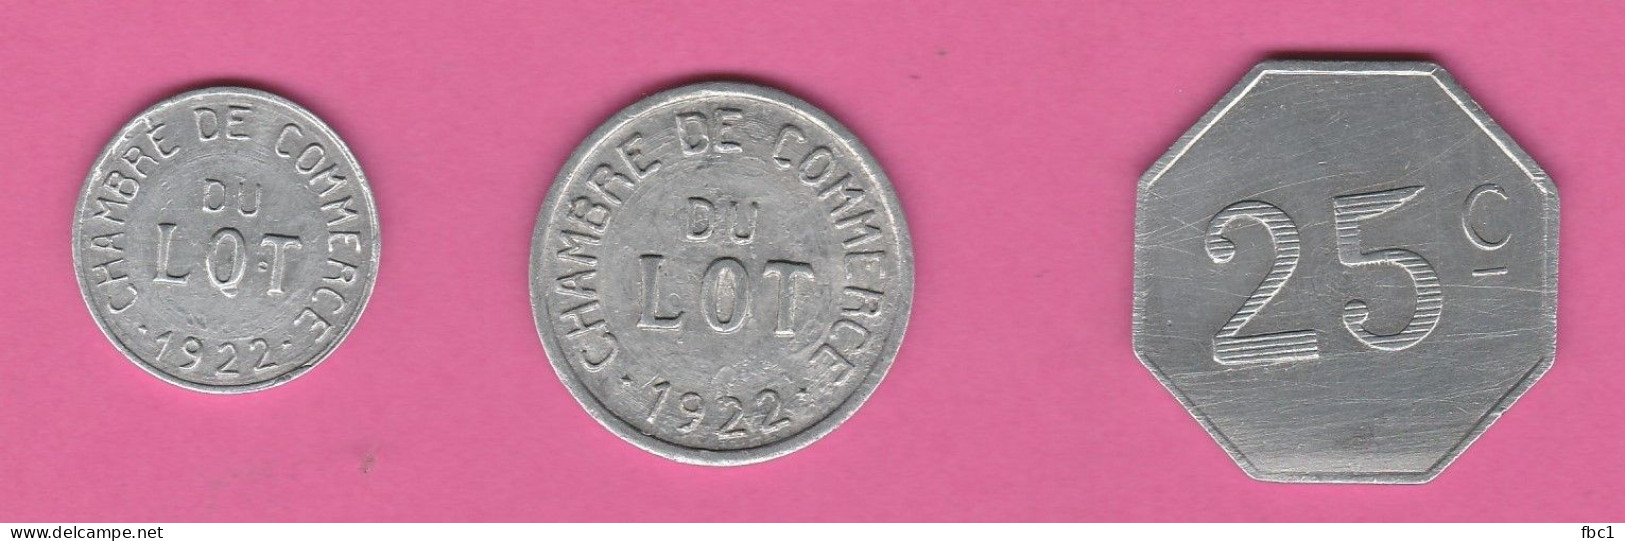 Lot - Chambre De Commerce Du Lot - 1922 - 25 Centimes - 10 Centimes - 5 Centimes - Monétaires / De Nécessité